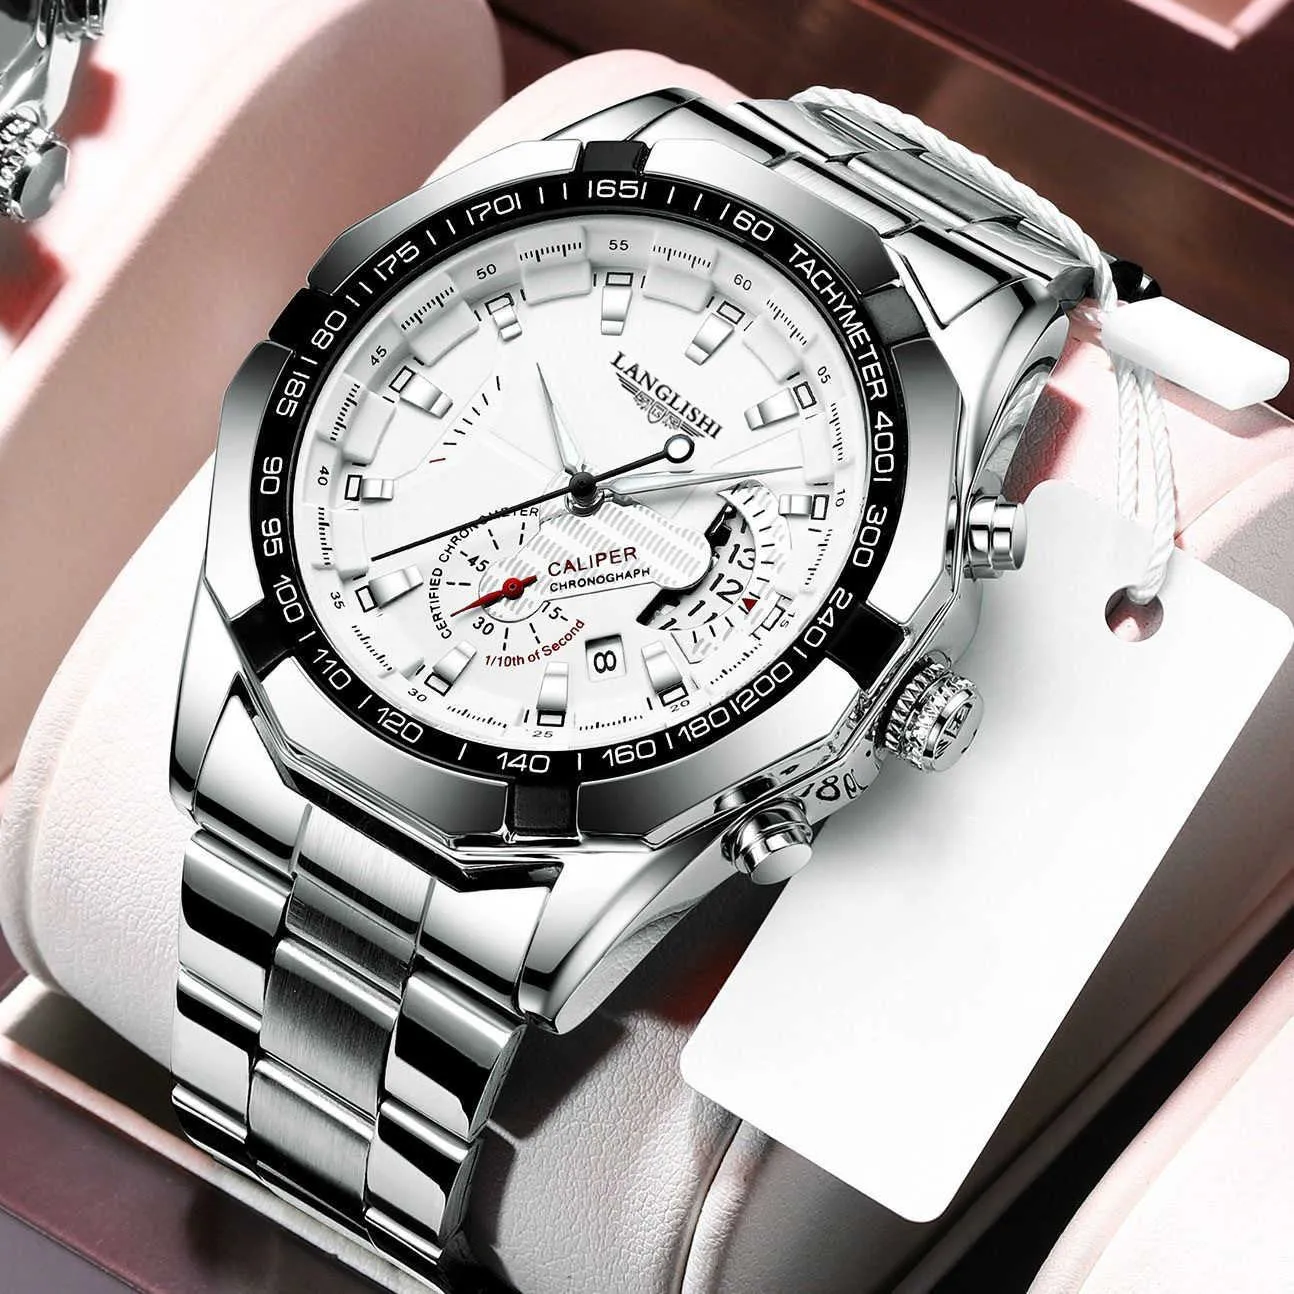 LANGLISHI 2020 Neue Uhren Männer Luxus Marke Chronograph Männlichen Sport Uhren Wasserdicht Edelstahl Quarz Männer Uhr X0625